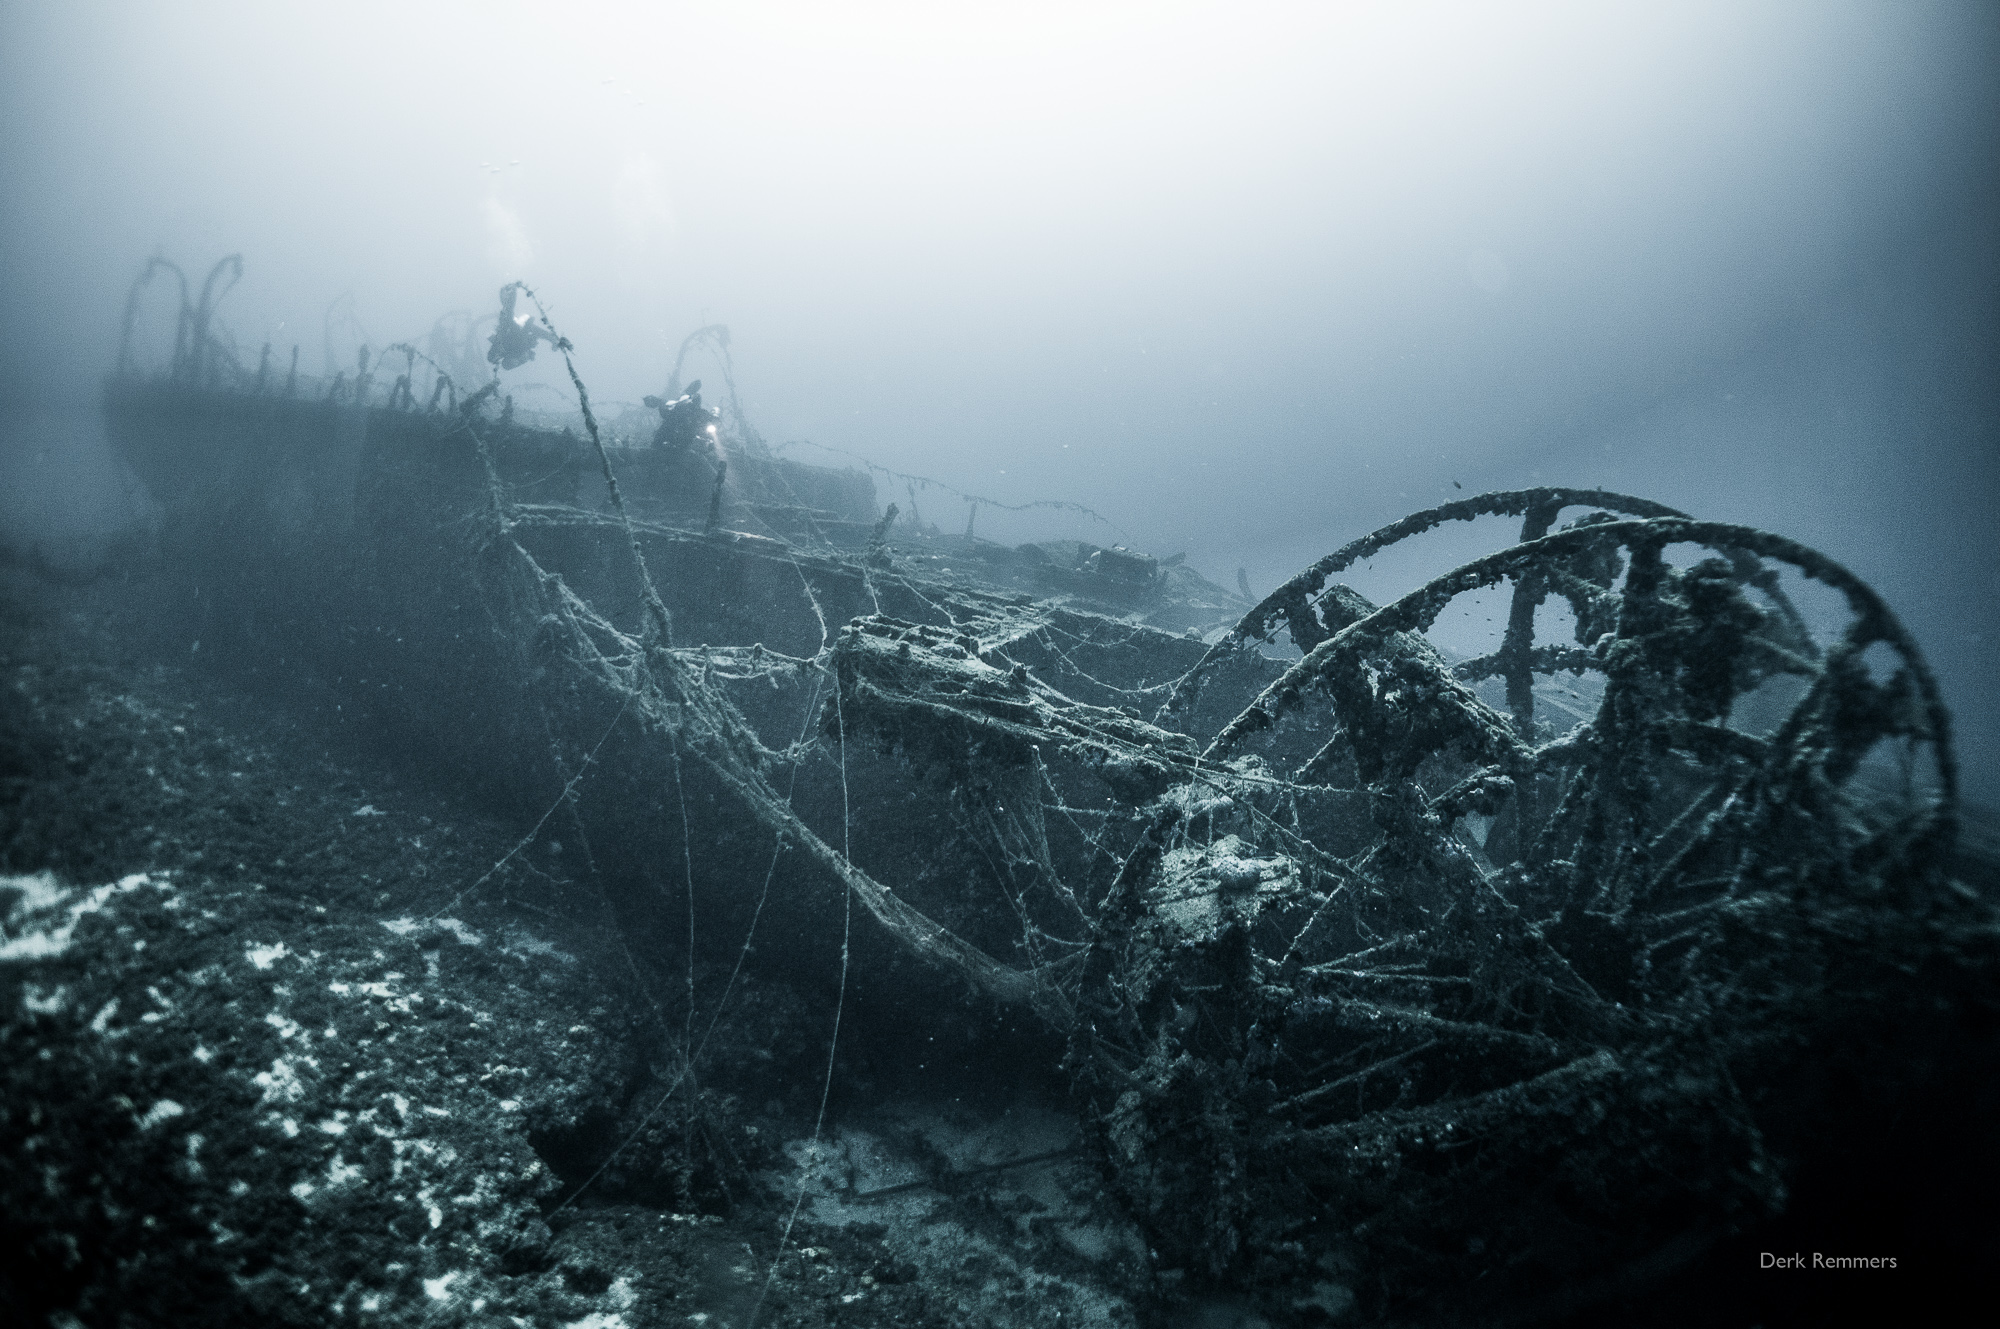 kea-opens-spectacular-shipwreck-dive-sites1